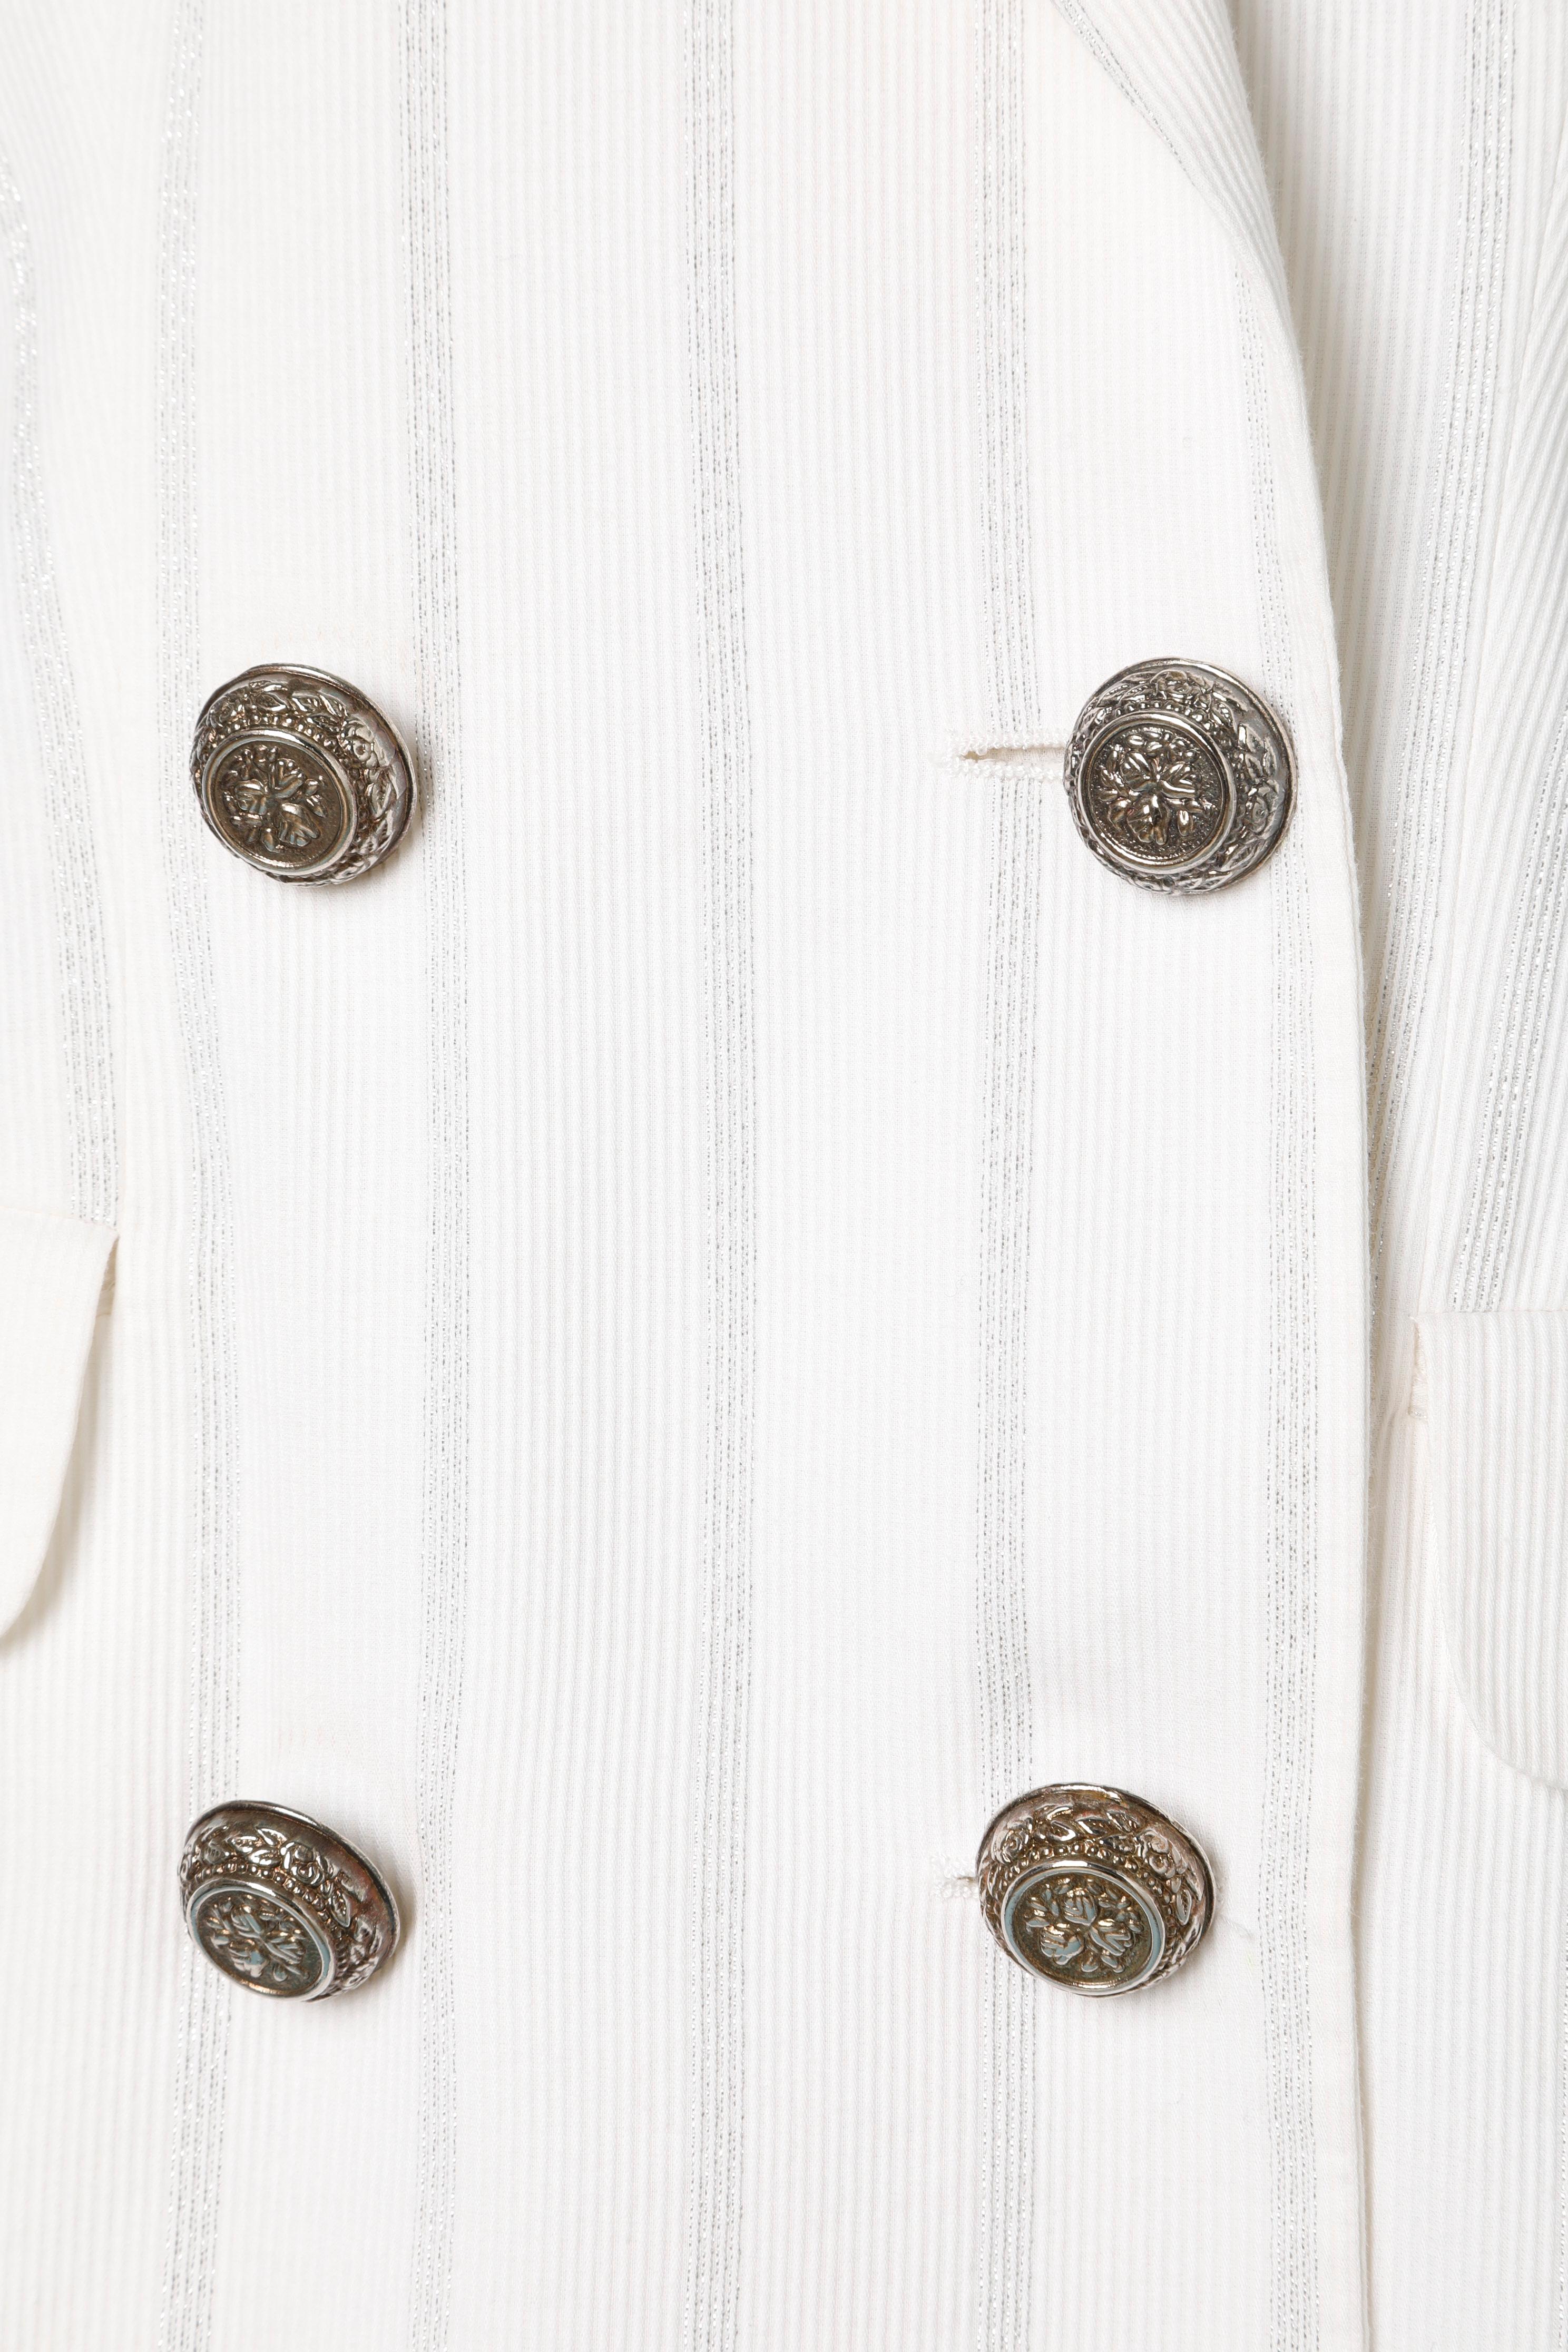 Gris Veste à double boutonnage en lurex blanc et argenté Versus de Gianni Versace  en vente